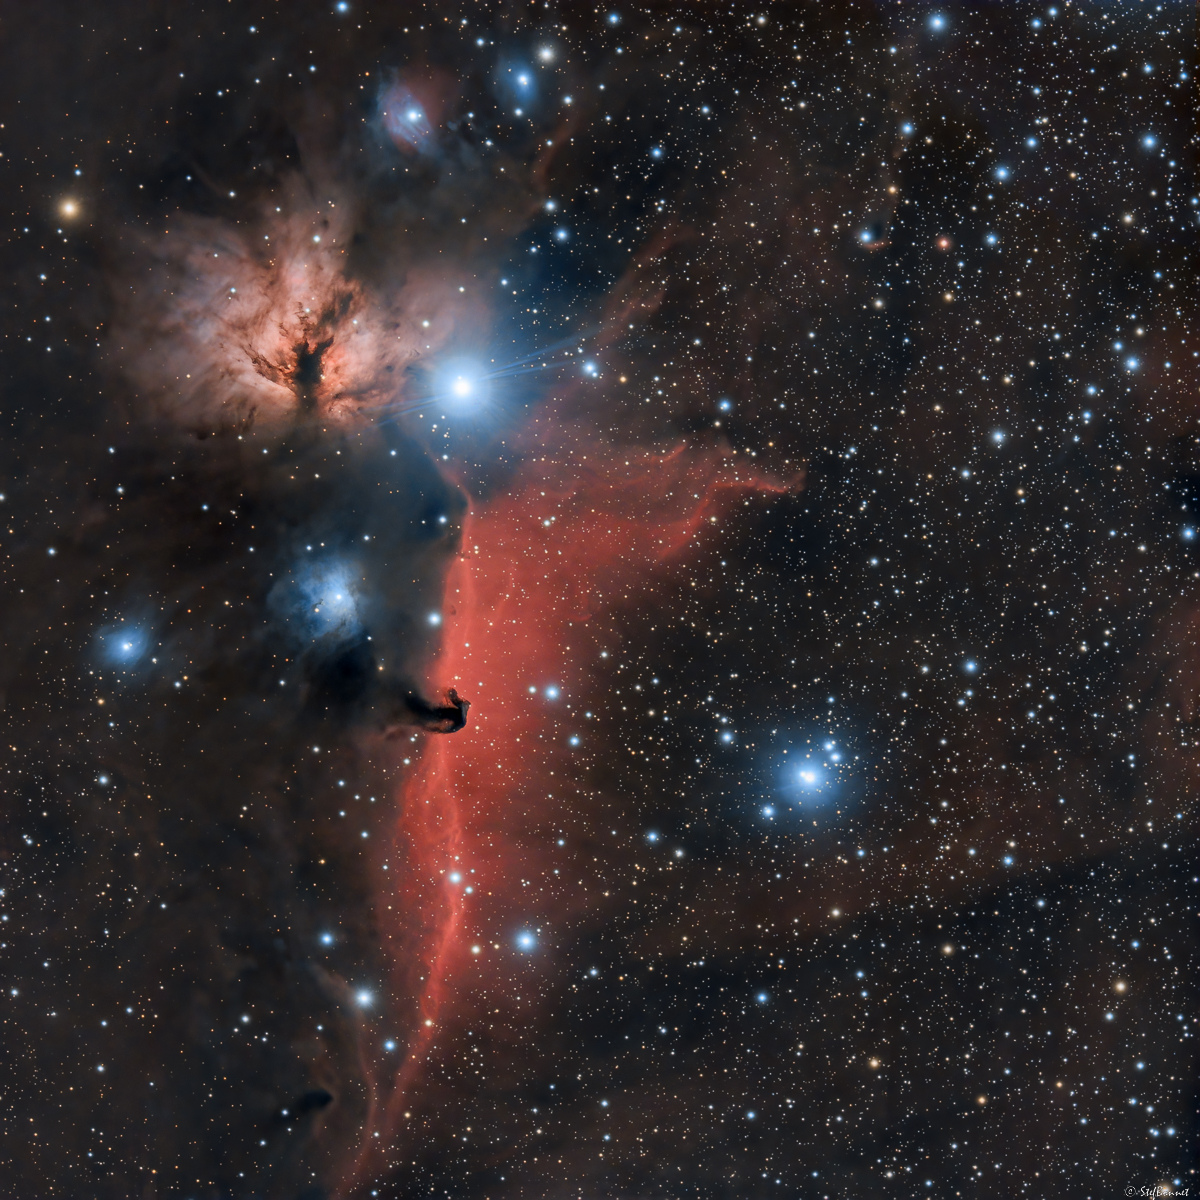 63b1c4e4bf5d9_20221127IC434TetedeCheval-NGC2024Flamme-RedStar-Web.jpg.77ba59545494a00cd3cae35b43e3f8a1.jpg